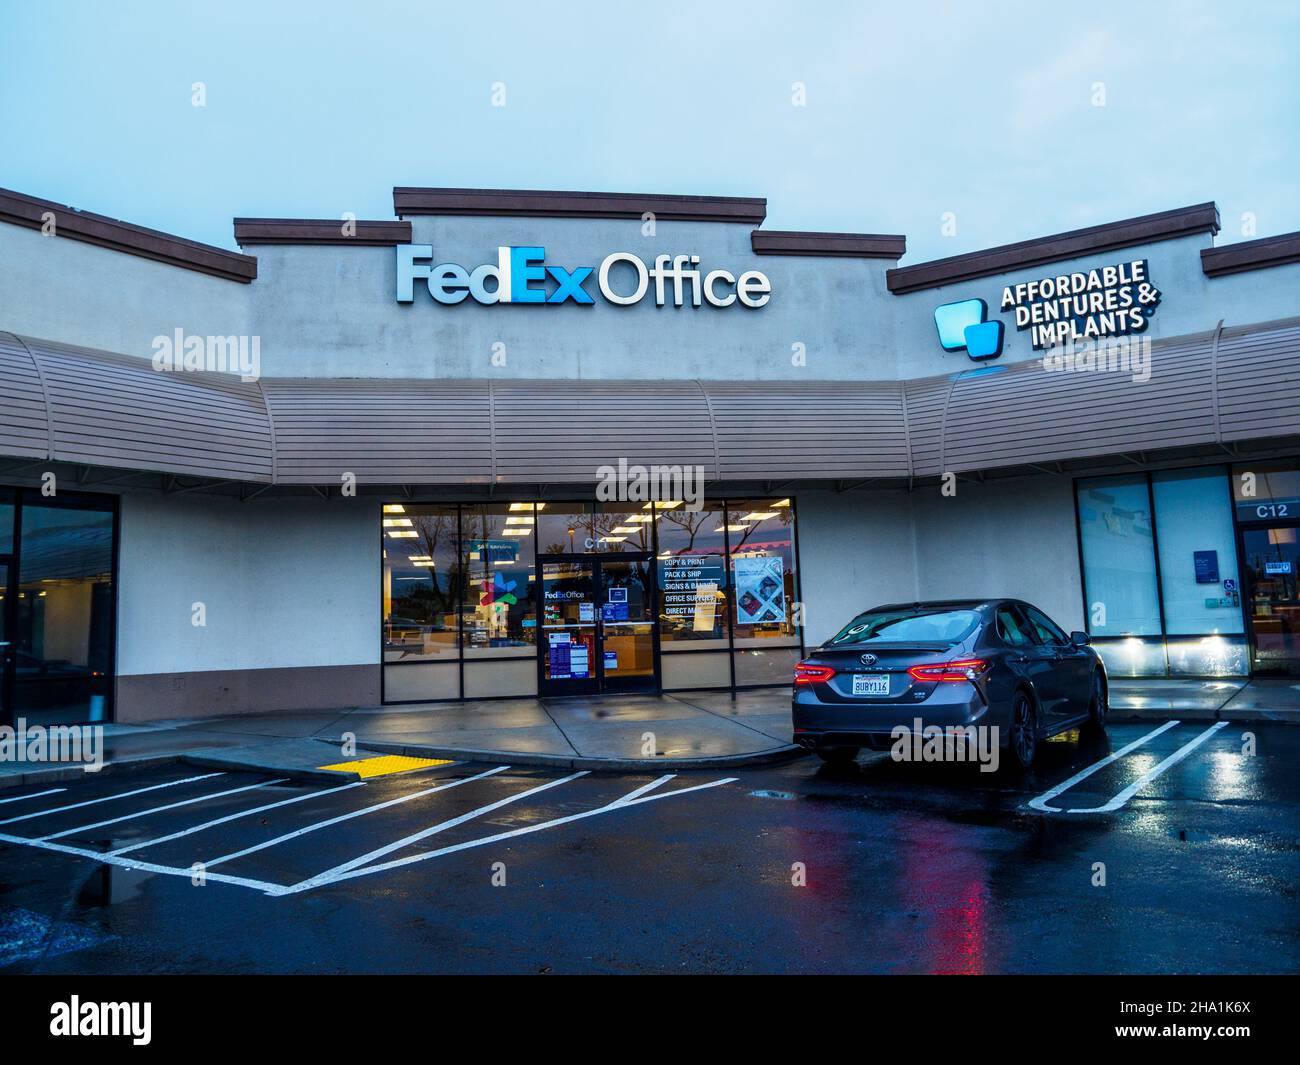 A FedEx Office store in Modesto Calfiornia Stock Photo